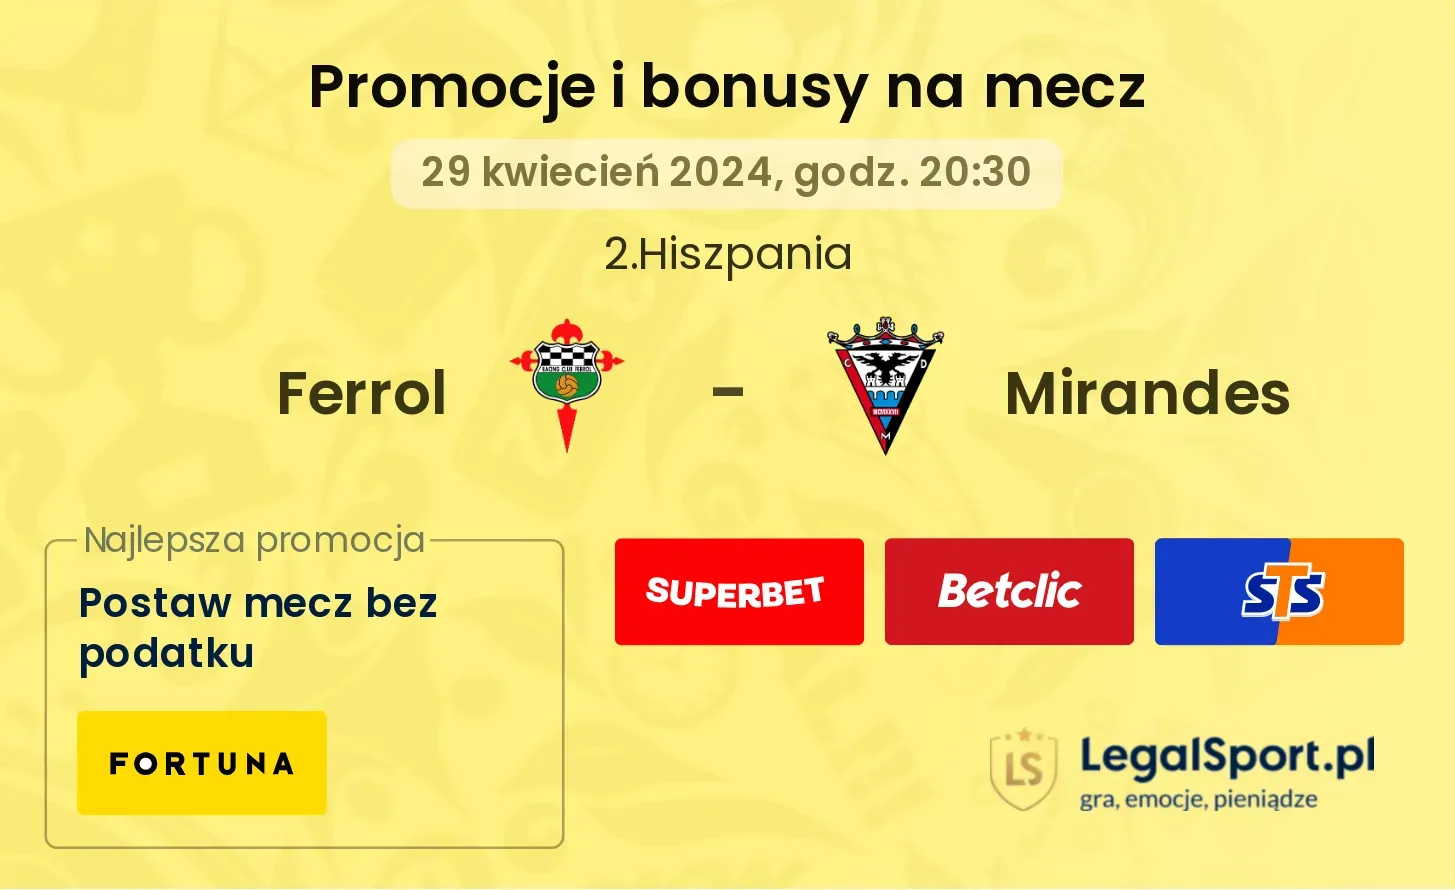 Ferrol - Mirandes promocje bonusy na mecz